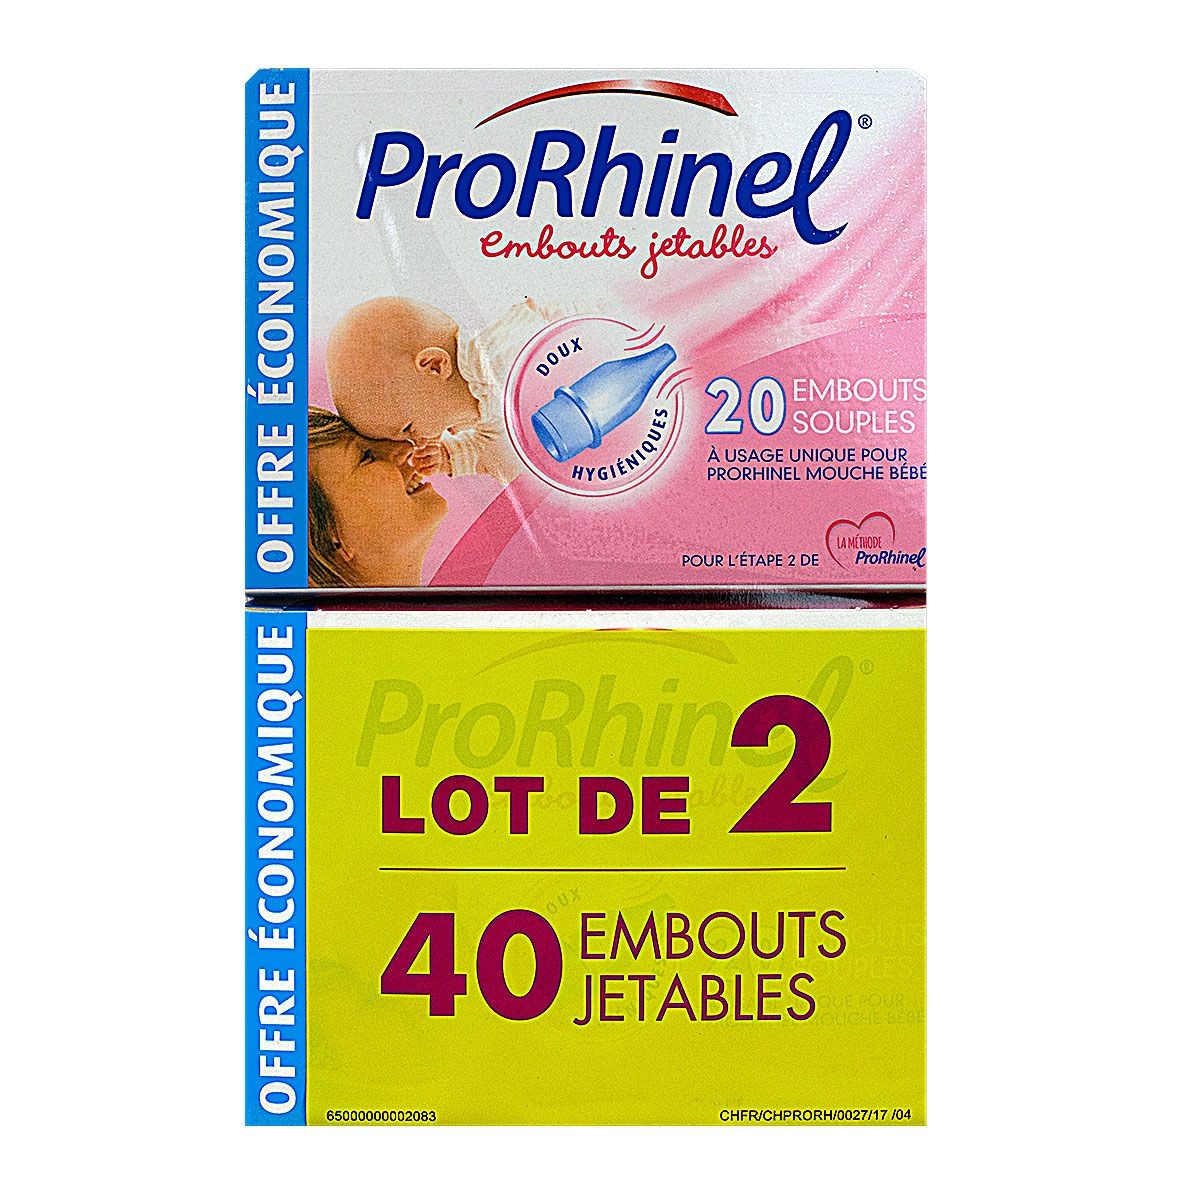 Mouche bébé Prorhinel - Pharmacie des Drakkars